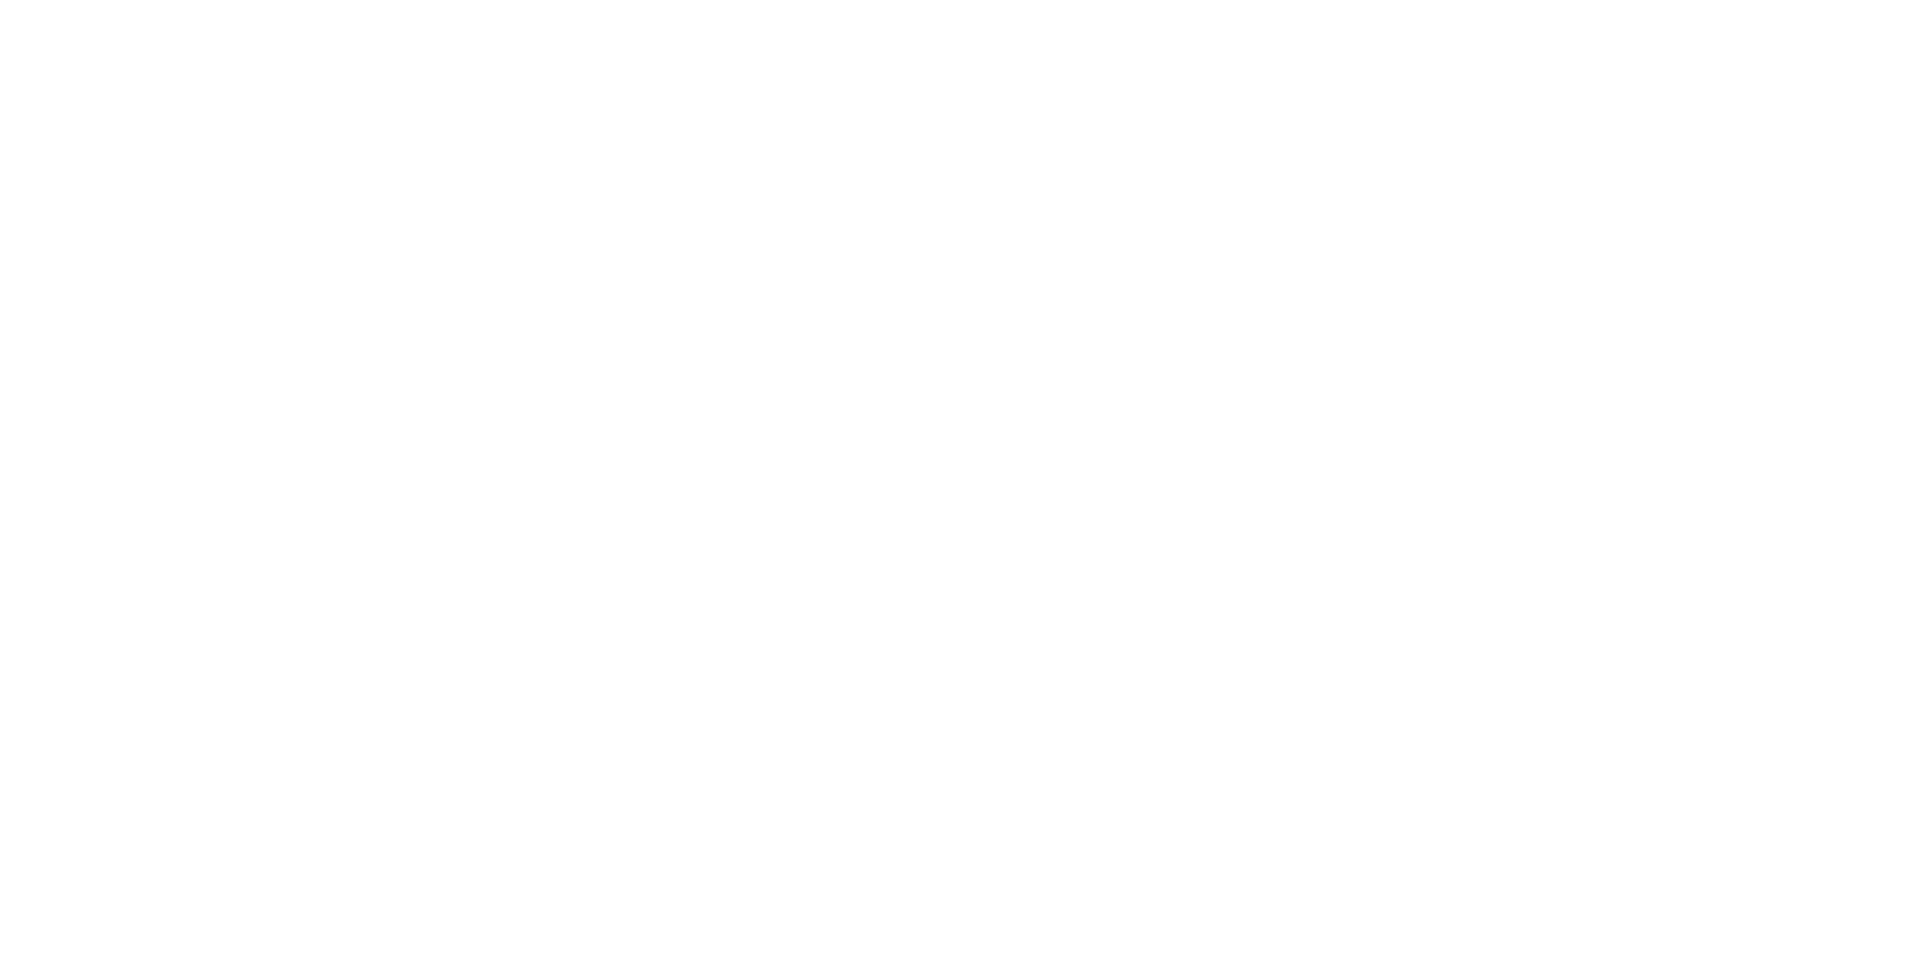 Cyberoo